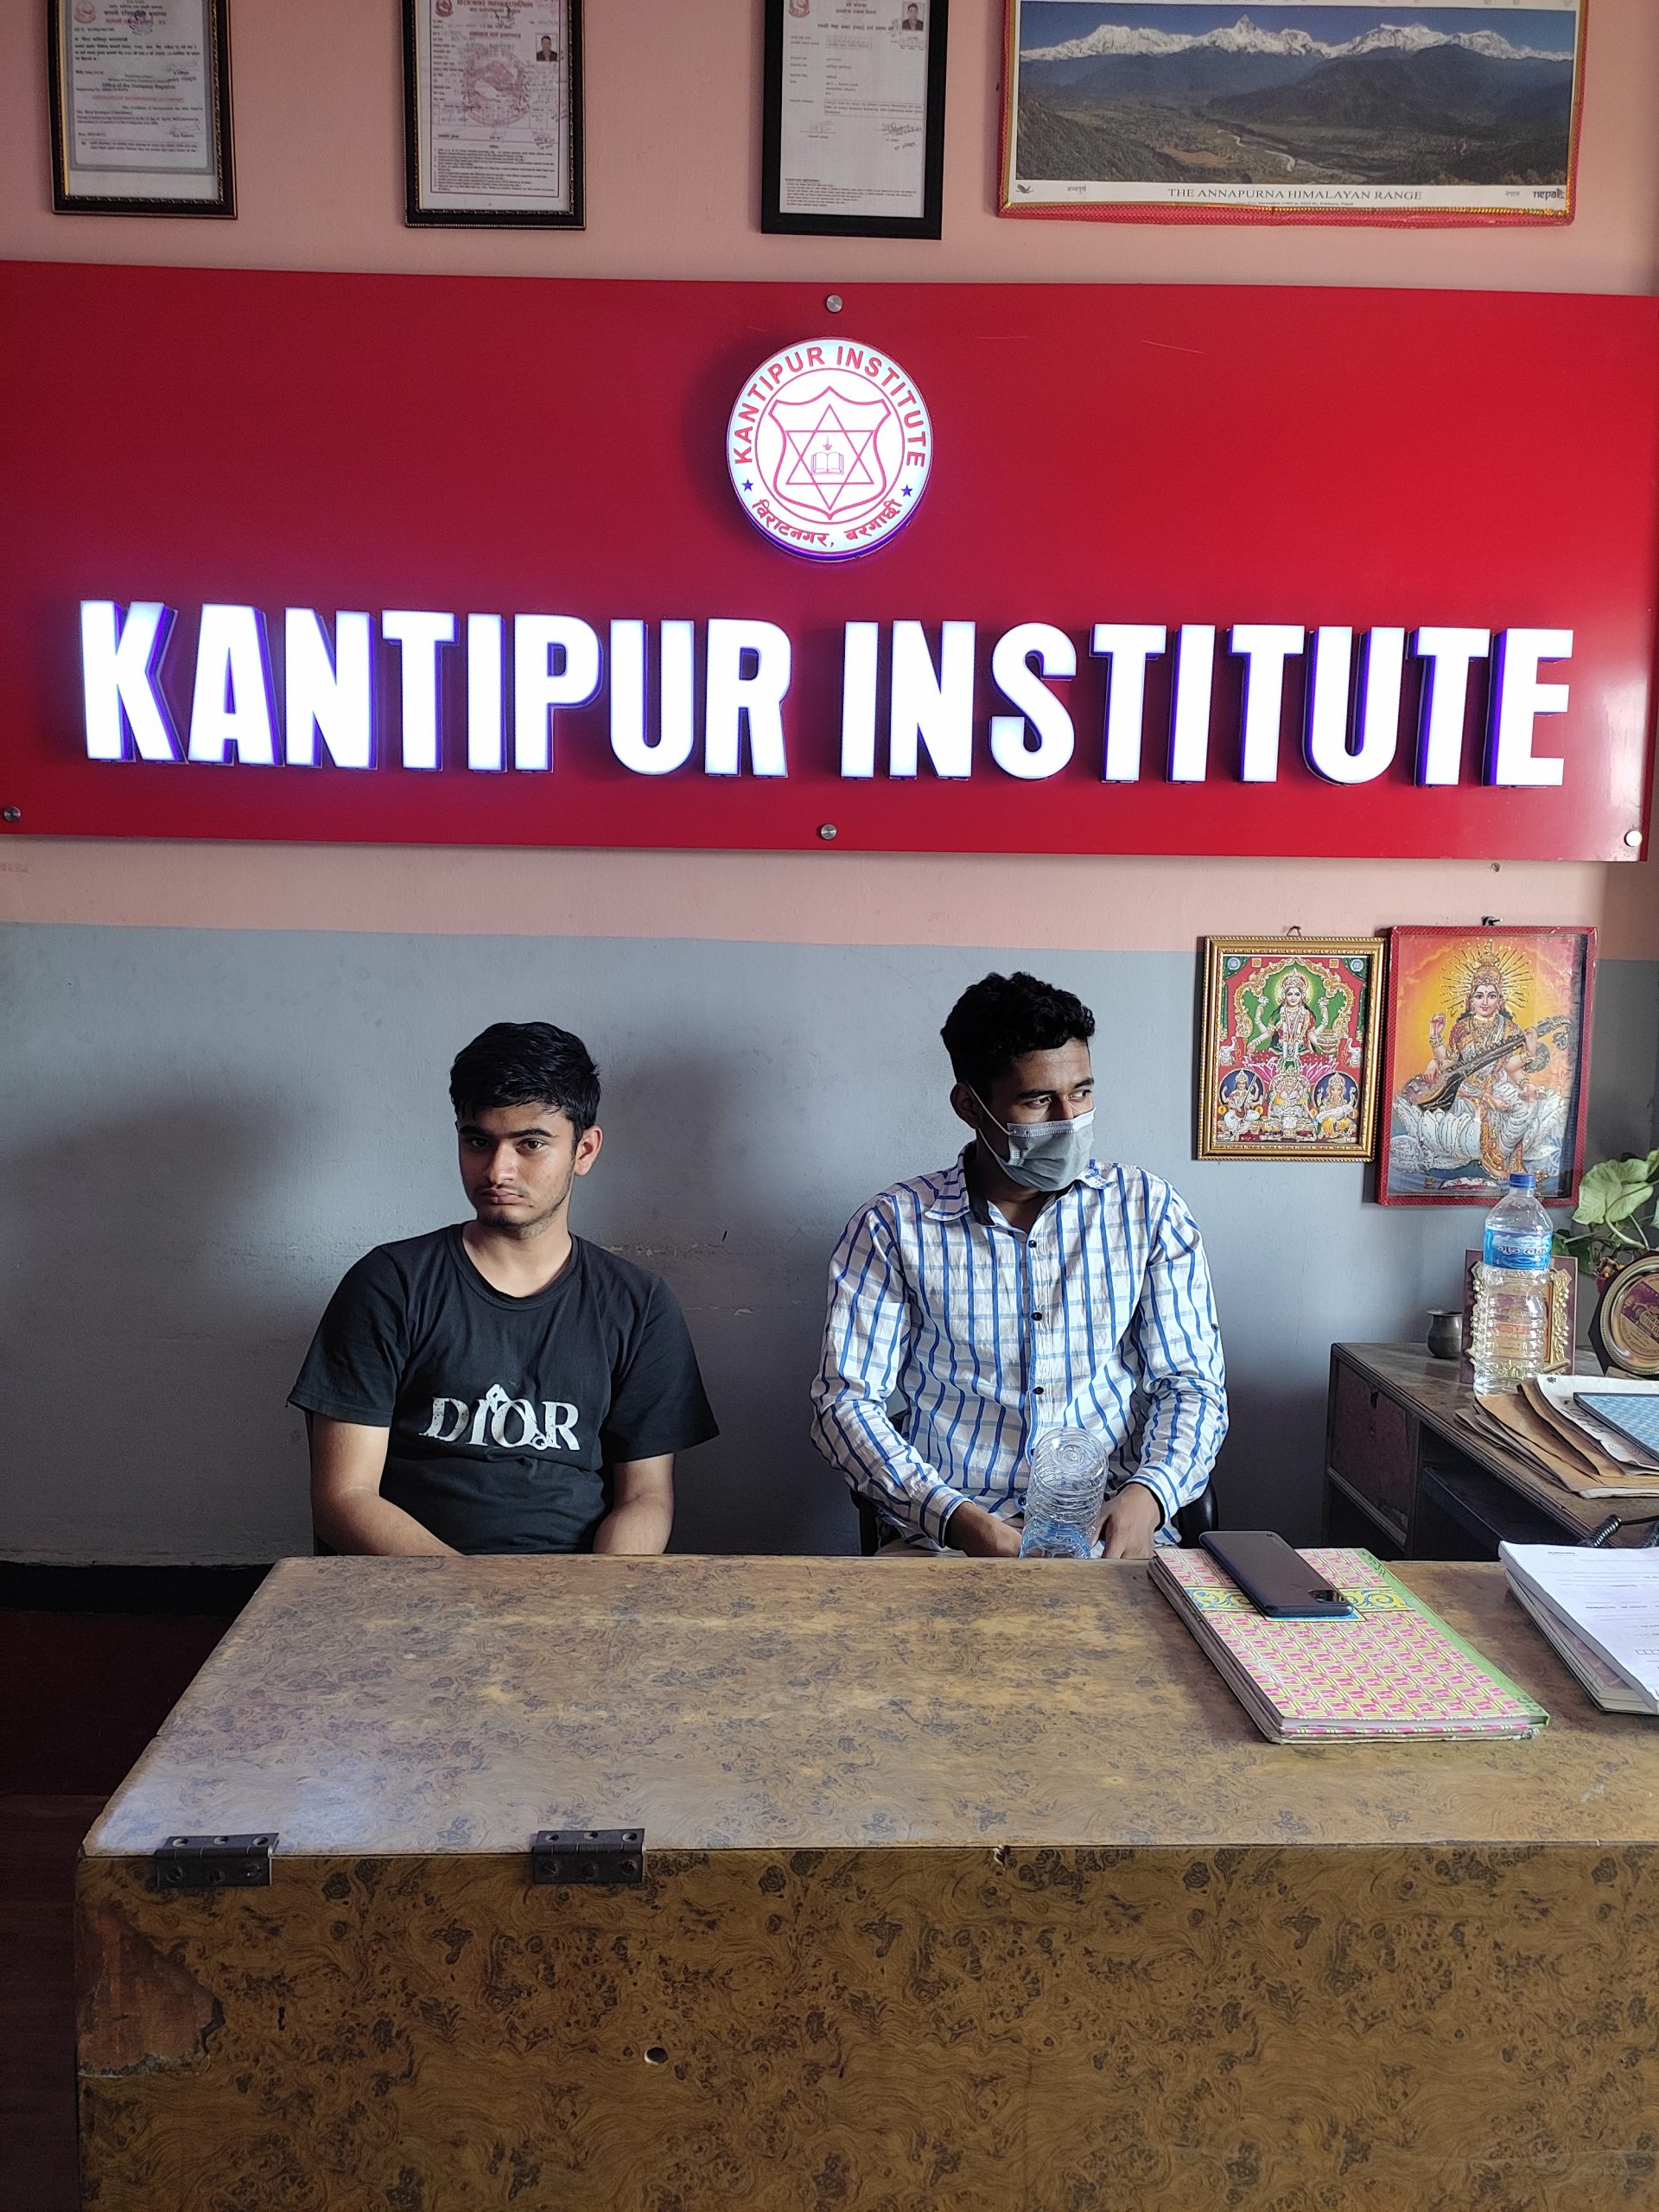 Kantipur Institute